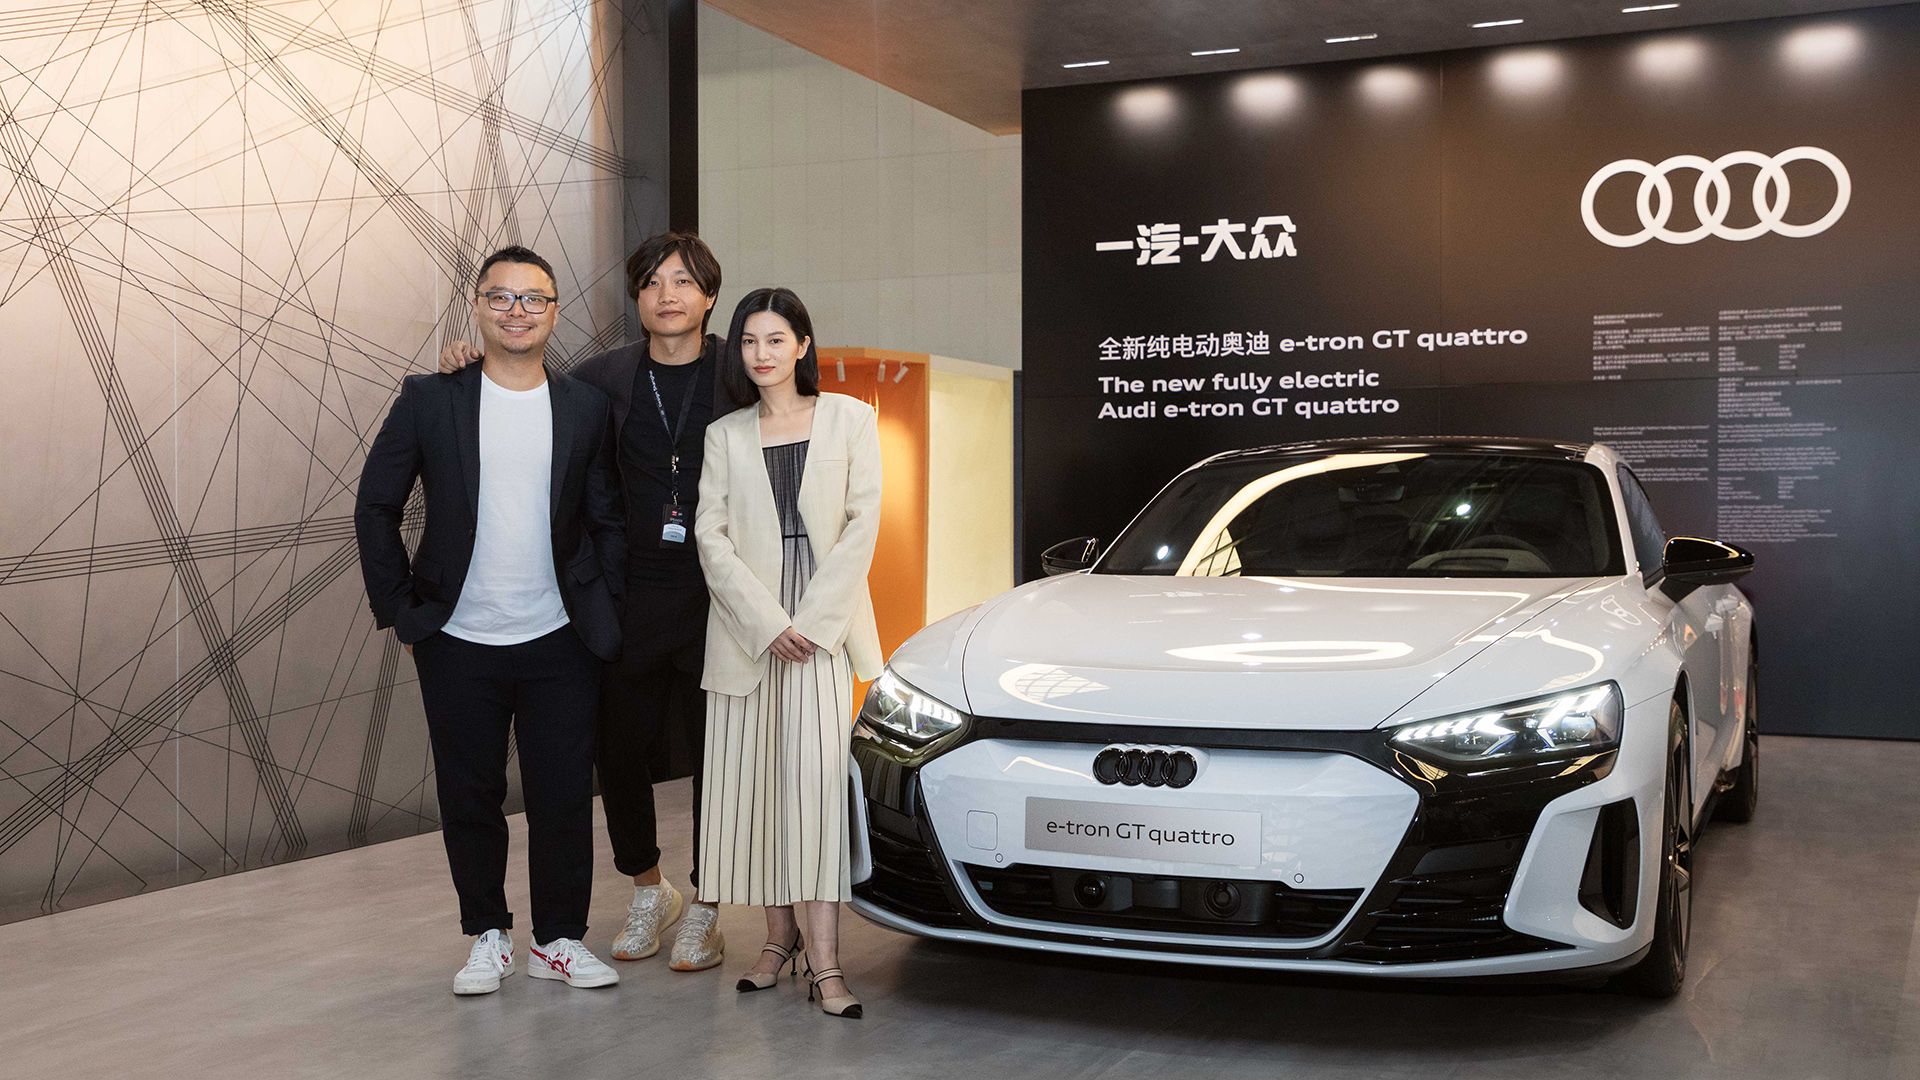 Yu (Scott) Zhao, Leiter Audi Innovation Research bei Audi China, und Yunzhou Wu, Senior Interior Designer und Koordinator Interior Design, mit der Influencerin Licheng Ling am Audi e-tron GT quattro